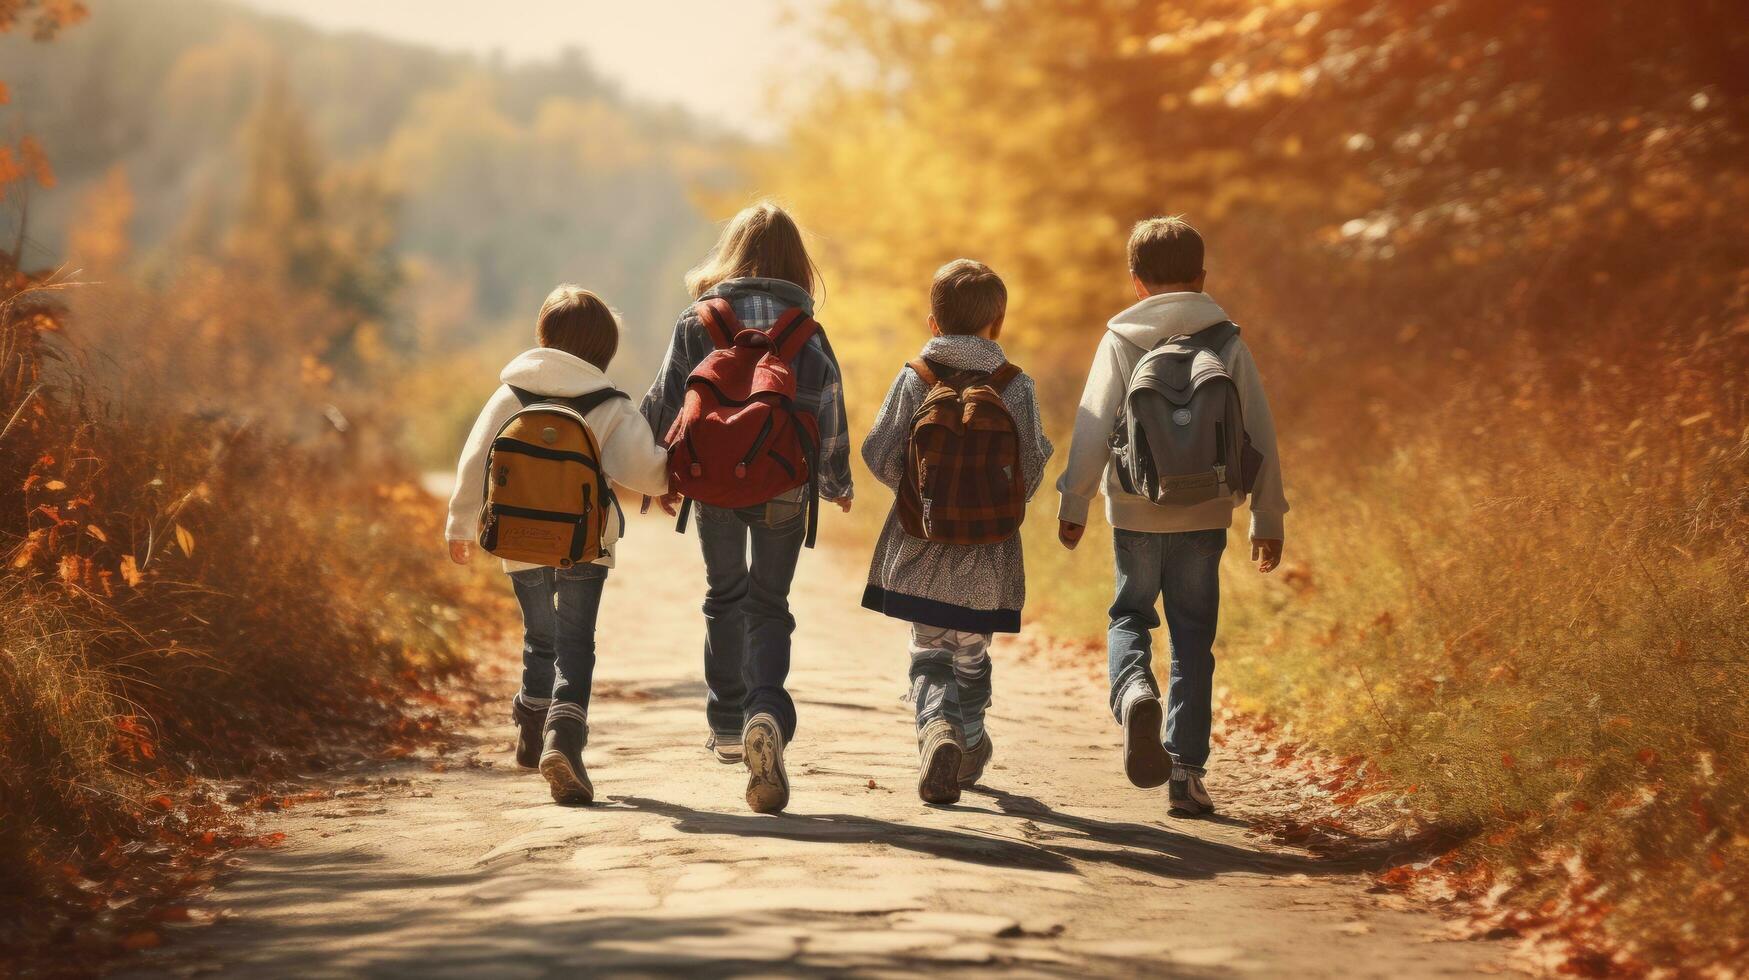 crianças caminhando em uma caminho carregando mochilas foto